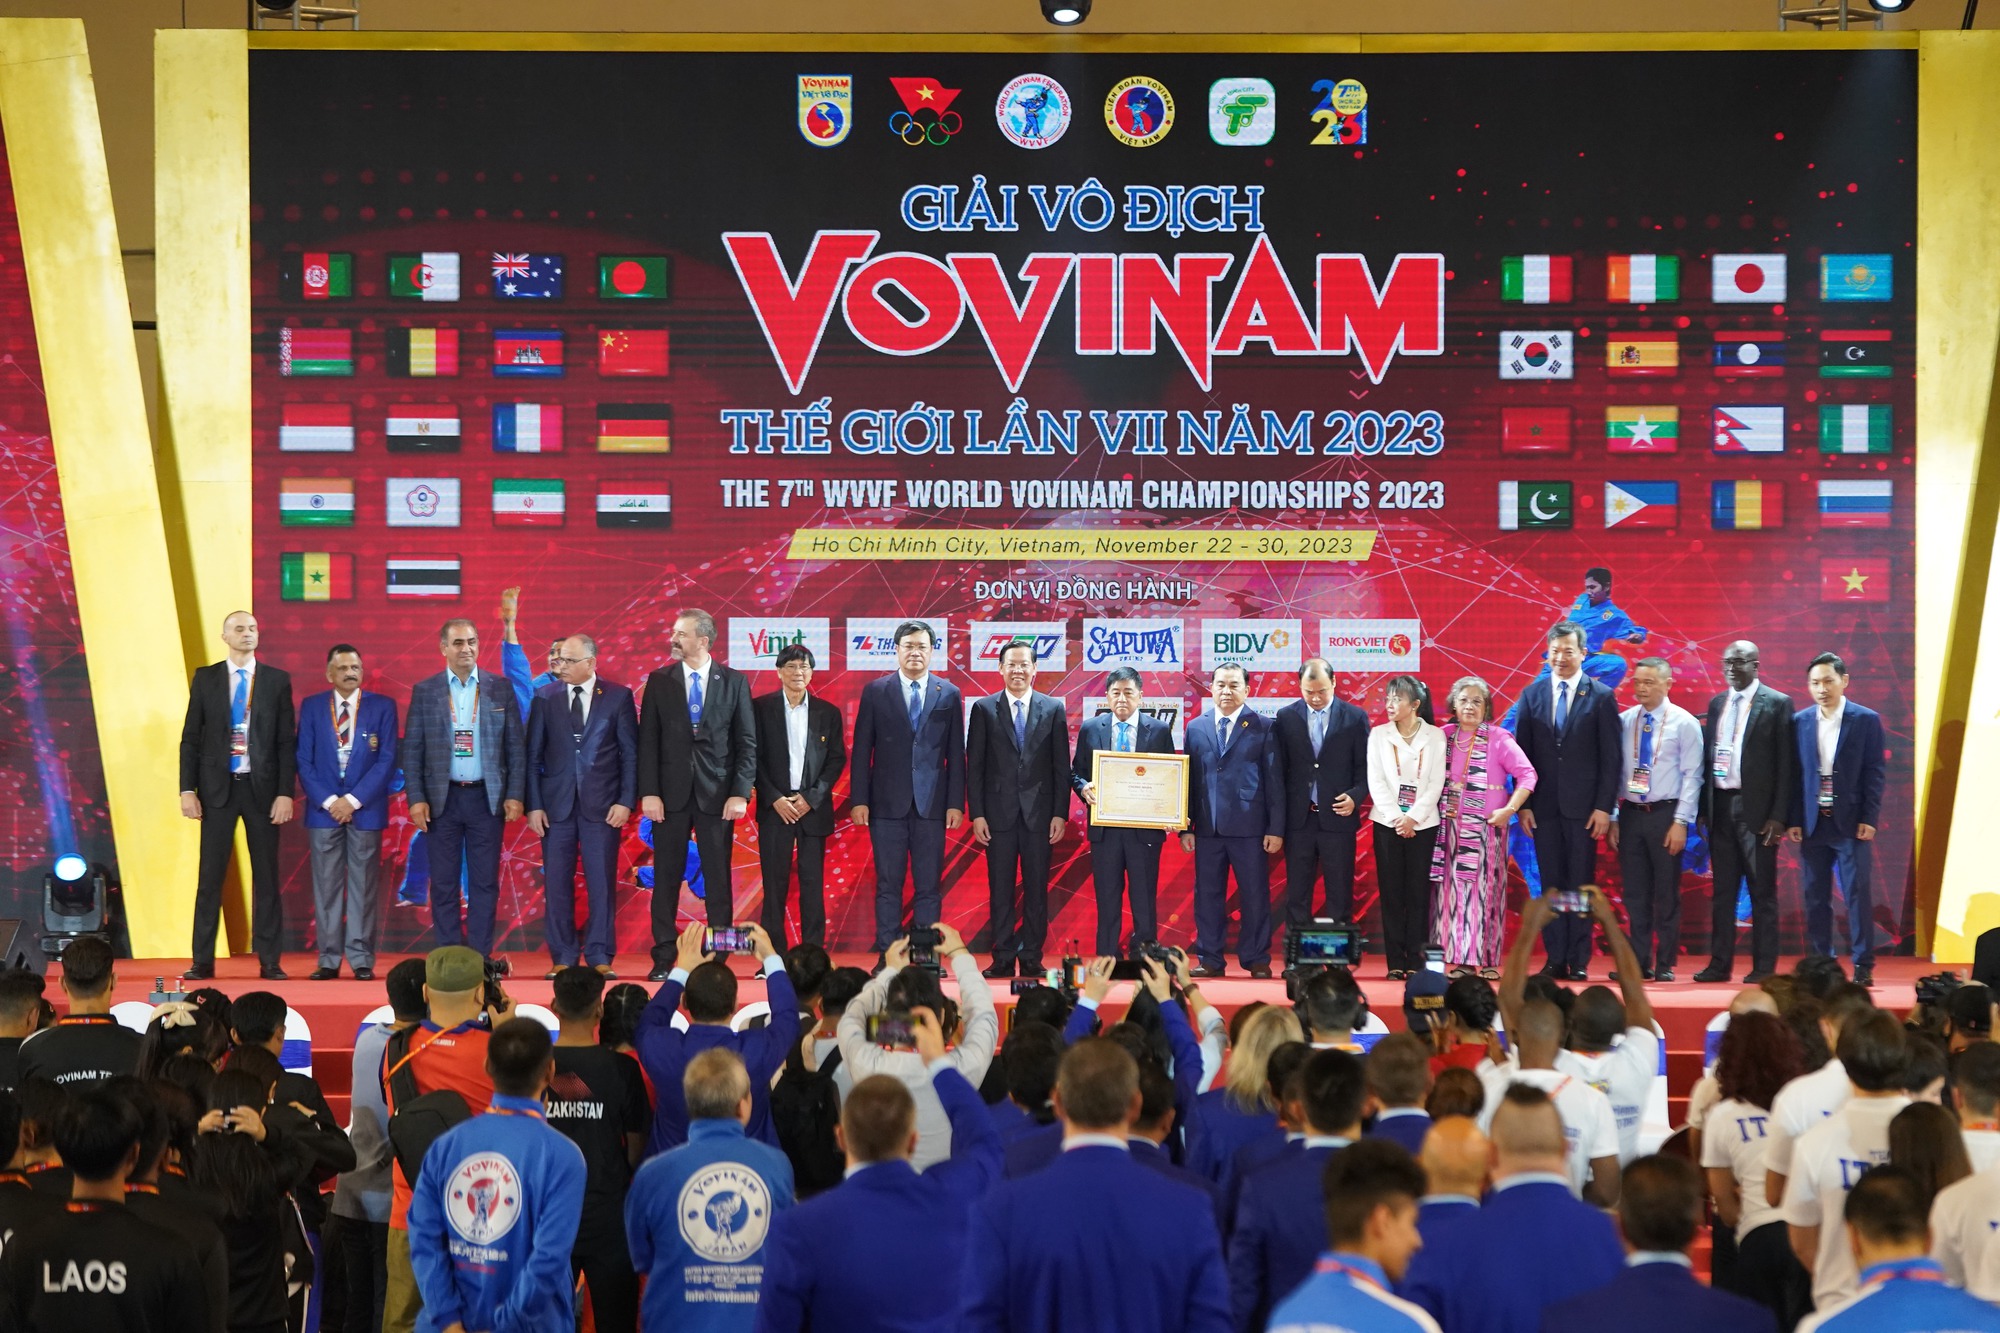 CLIP: Những màn biểu diễn ấn tượng trong lễ khai mạc Giải Vovinam thế giới lần 7-2023 - Ảnh 4.